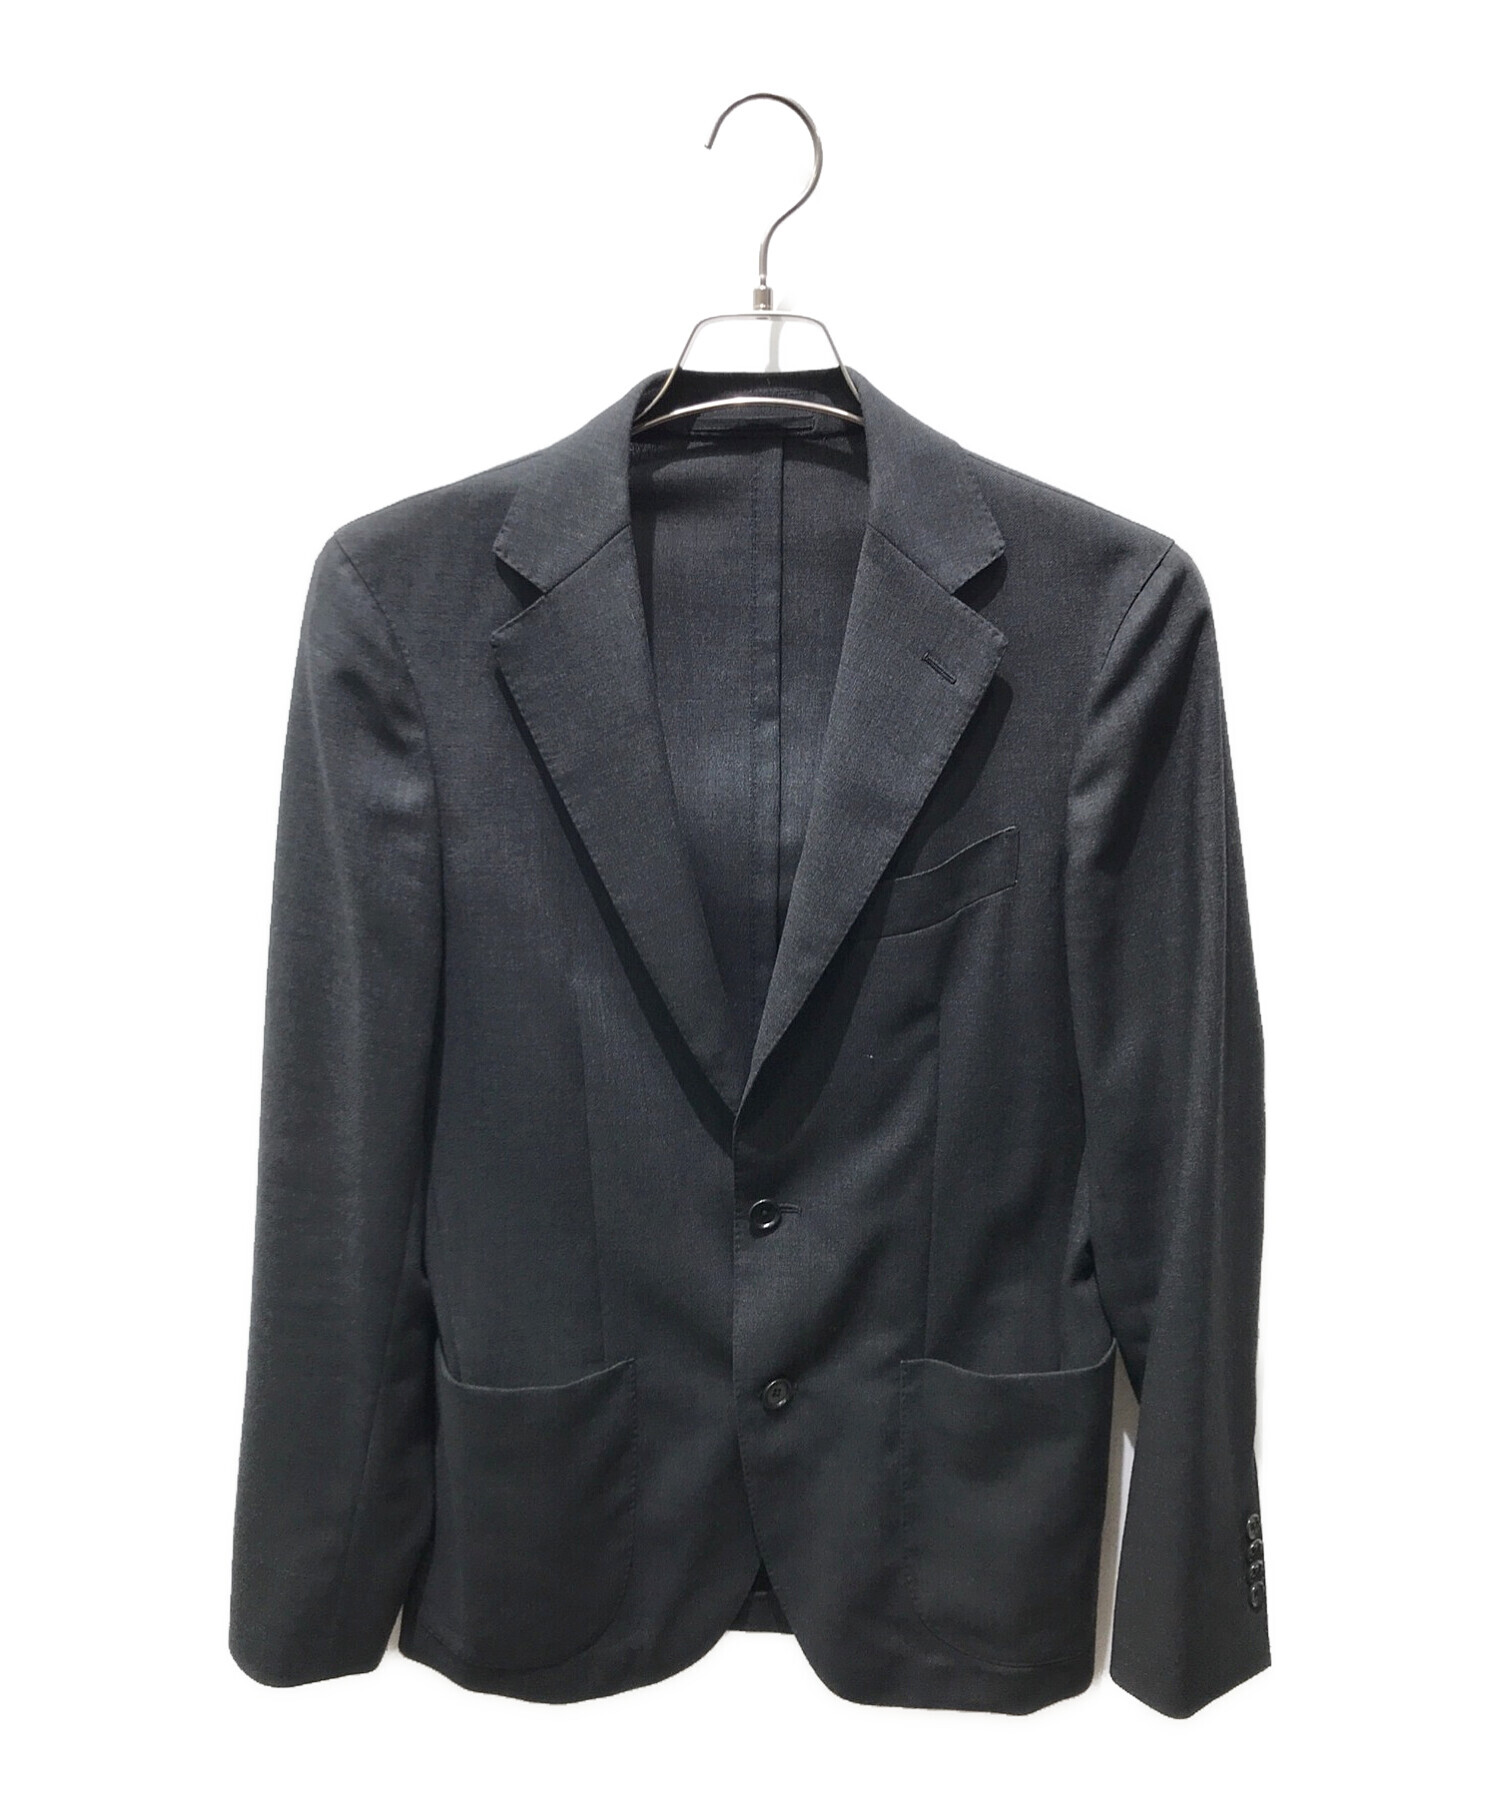 UNITED ARROWS TOKYO (ユナイテッドアローズトウキョウ) Tailored Jackets　1122-110-4531 グレー  サイズ:44